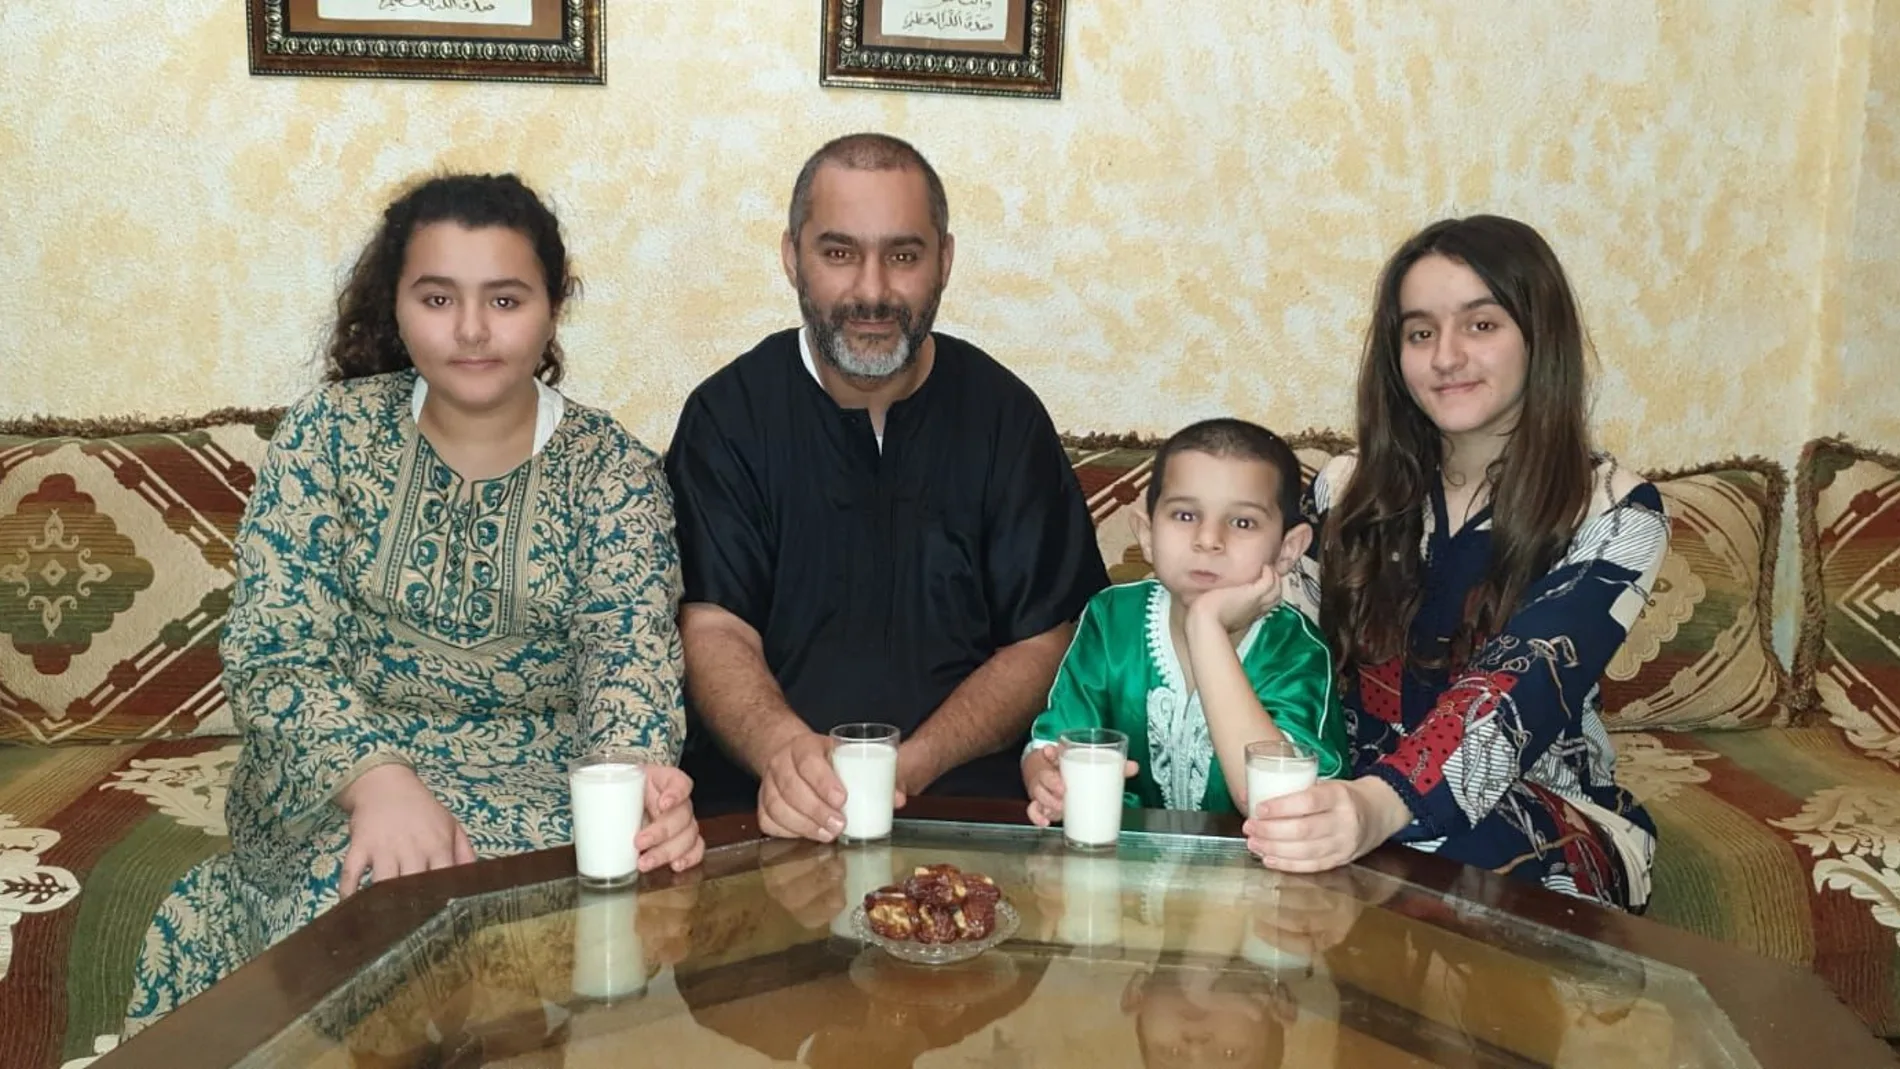 Dris, con sus hijos, durante el "iftar" en su casa de Algeciras